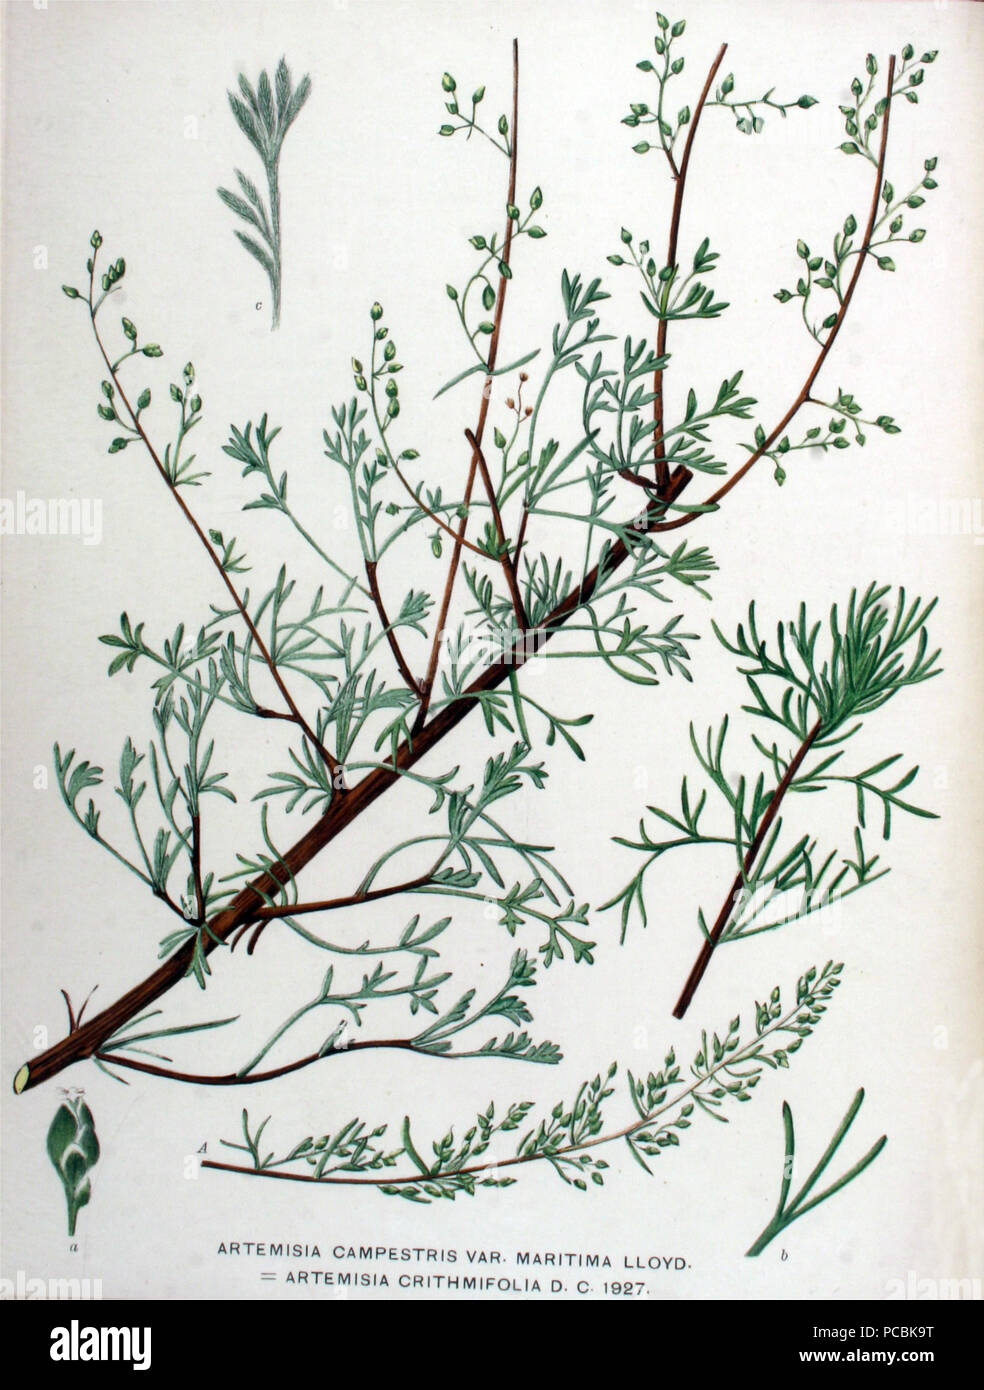 4 Artemisia campestris subsp. maritima (1a) Stock Photo